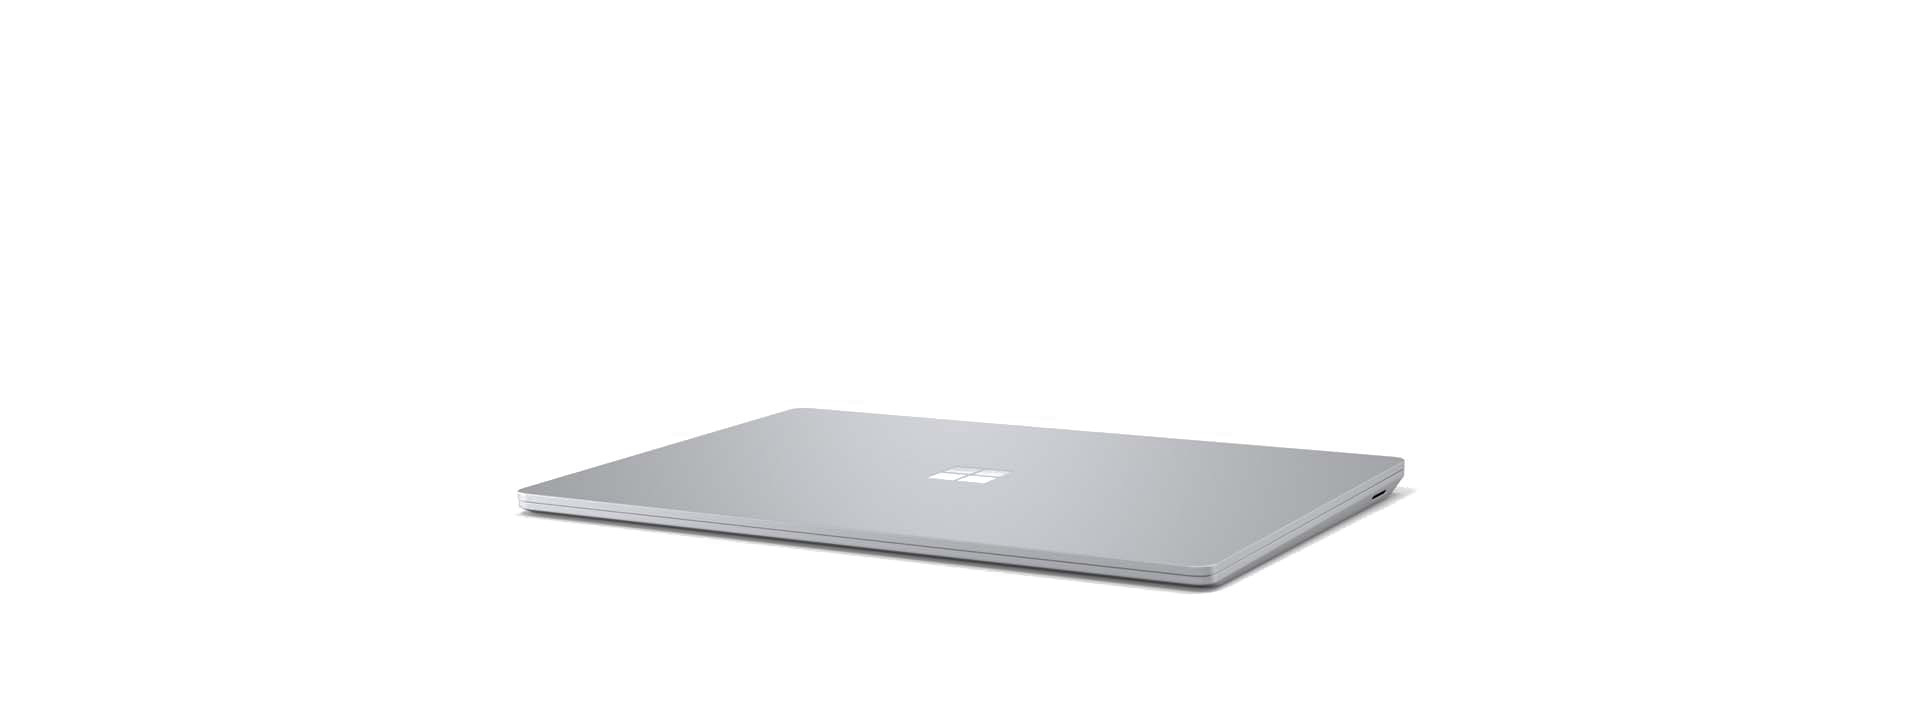 Surface Laptop 3 ในแนวเฉียงพร้อมหน้าจอที่ปิดอยู่